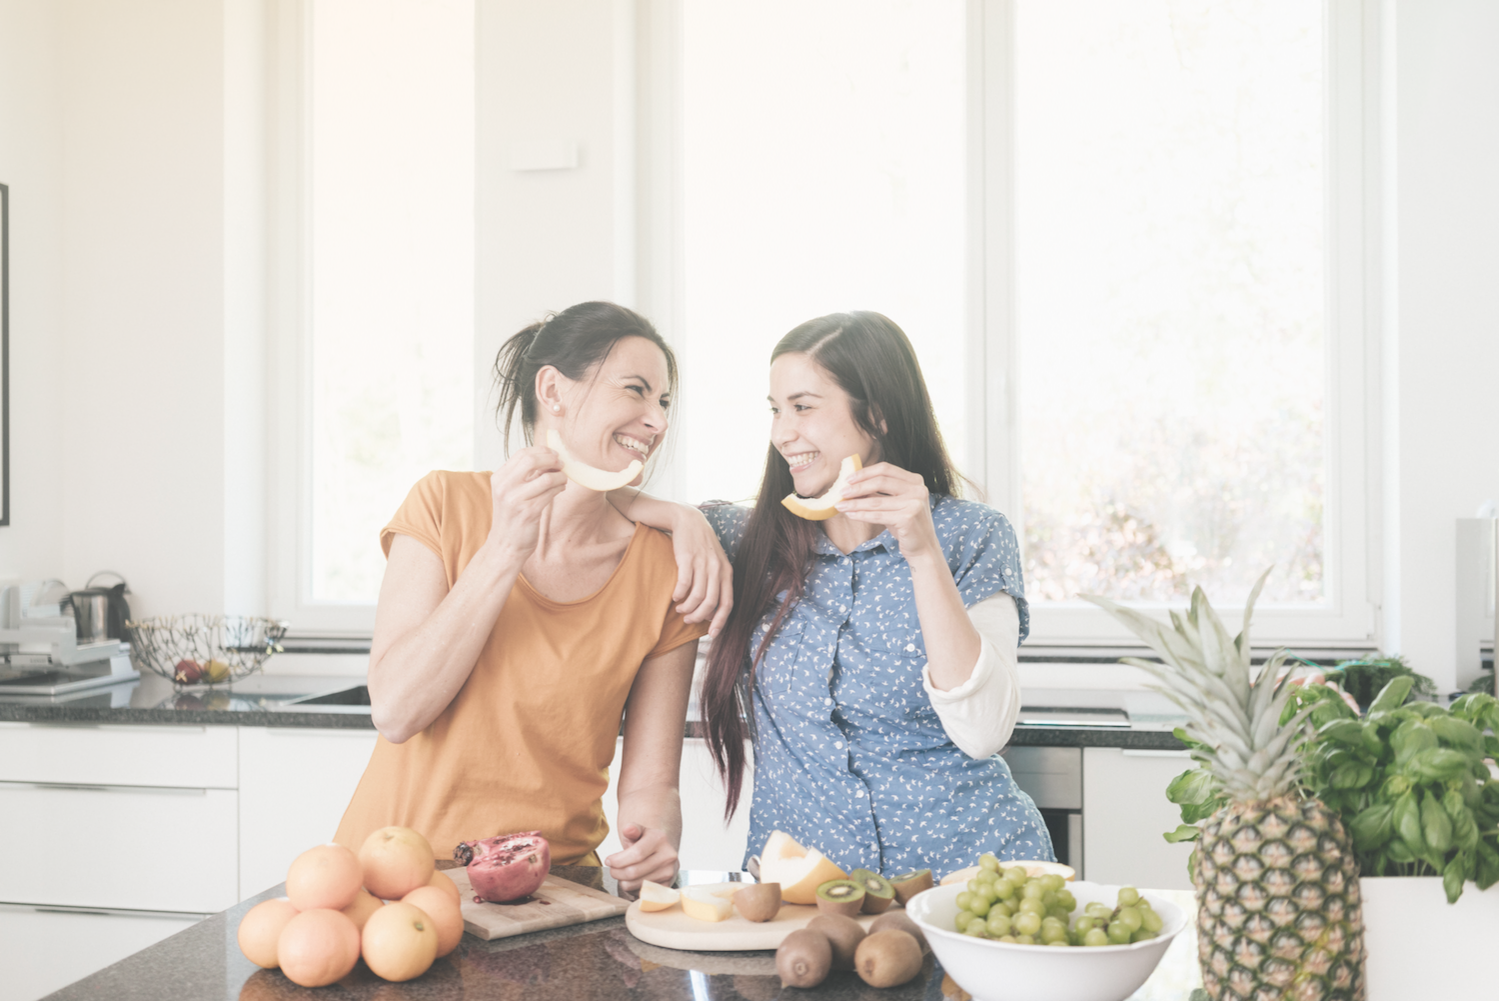 Zwei junge Frauen haben Spaß beim Essen von frischem Obst.